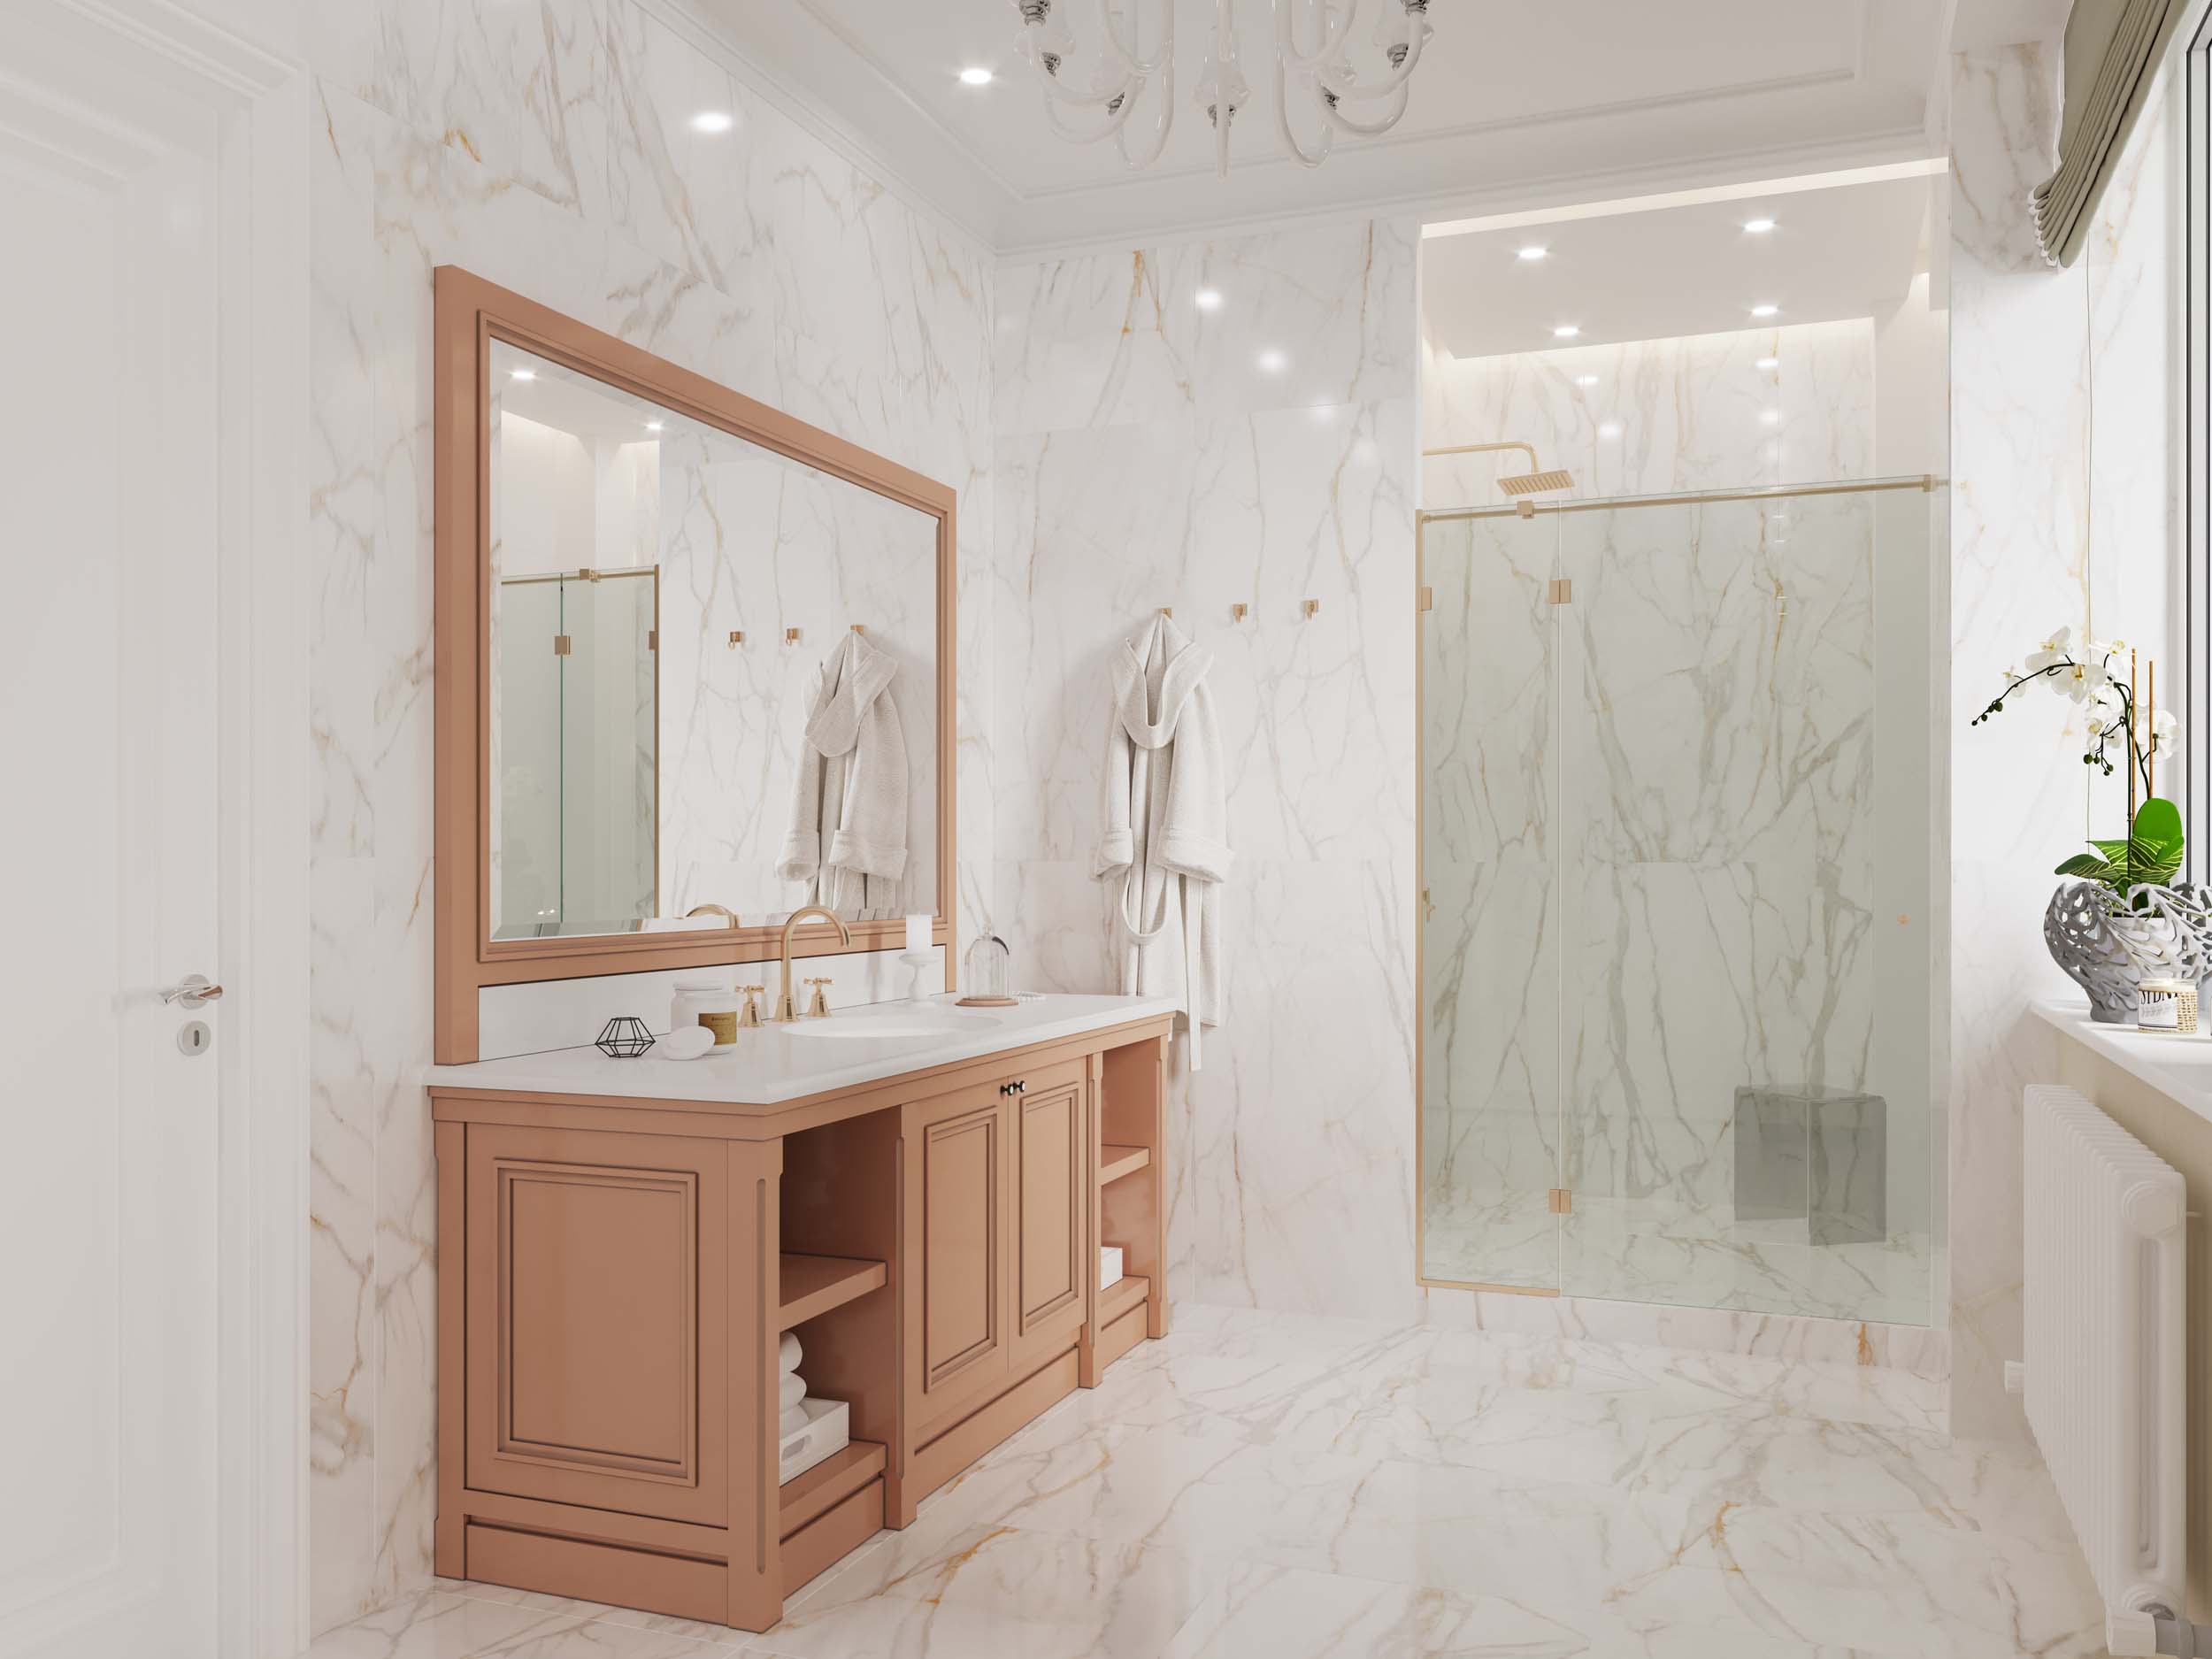 Ванная в мраморной плитке: 80 лучших фото-идей дизайна интерьера ванной - Дизайн для дома